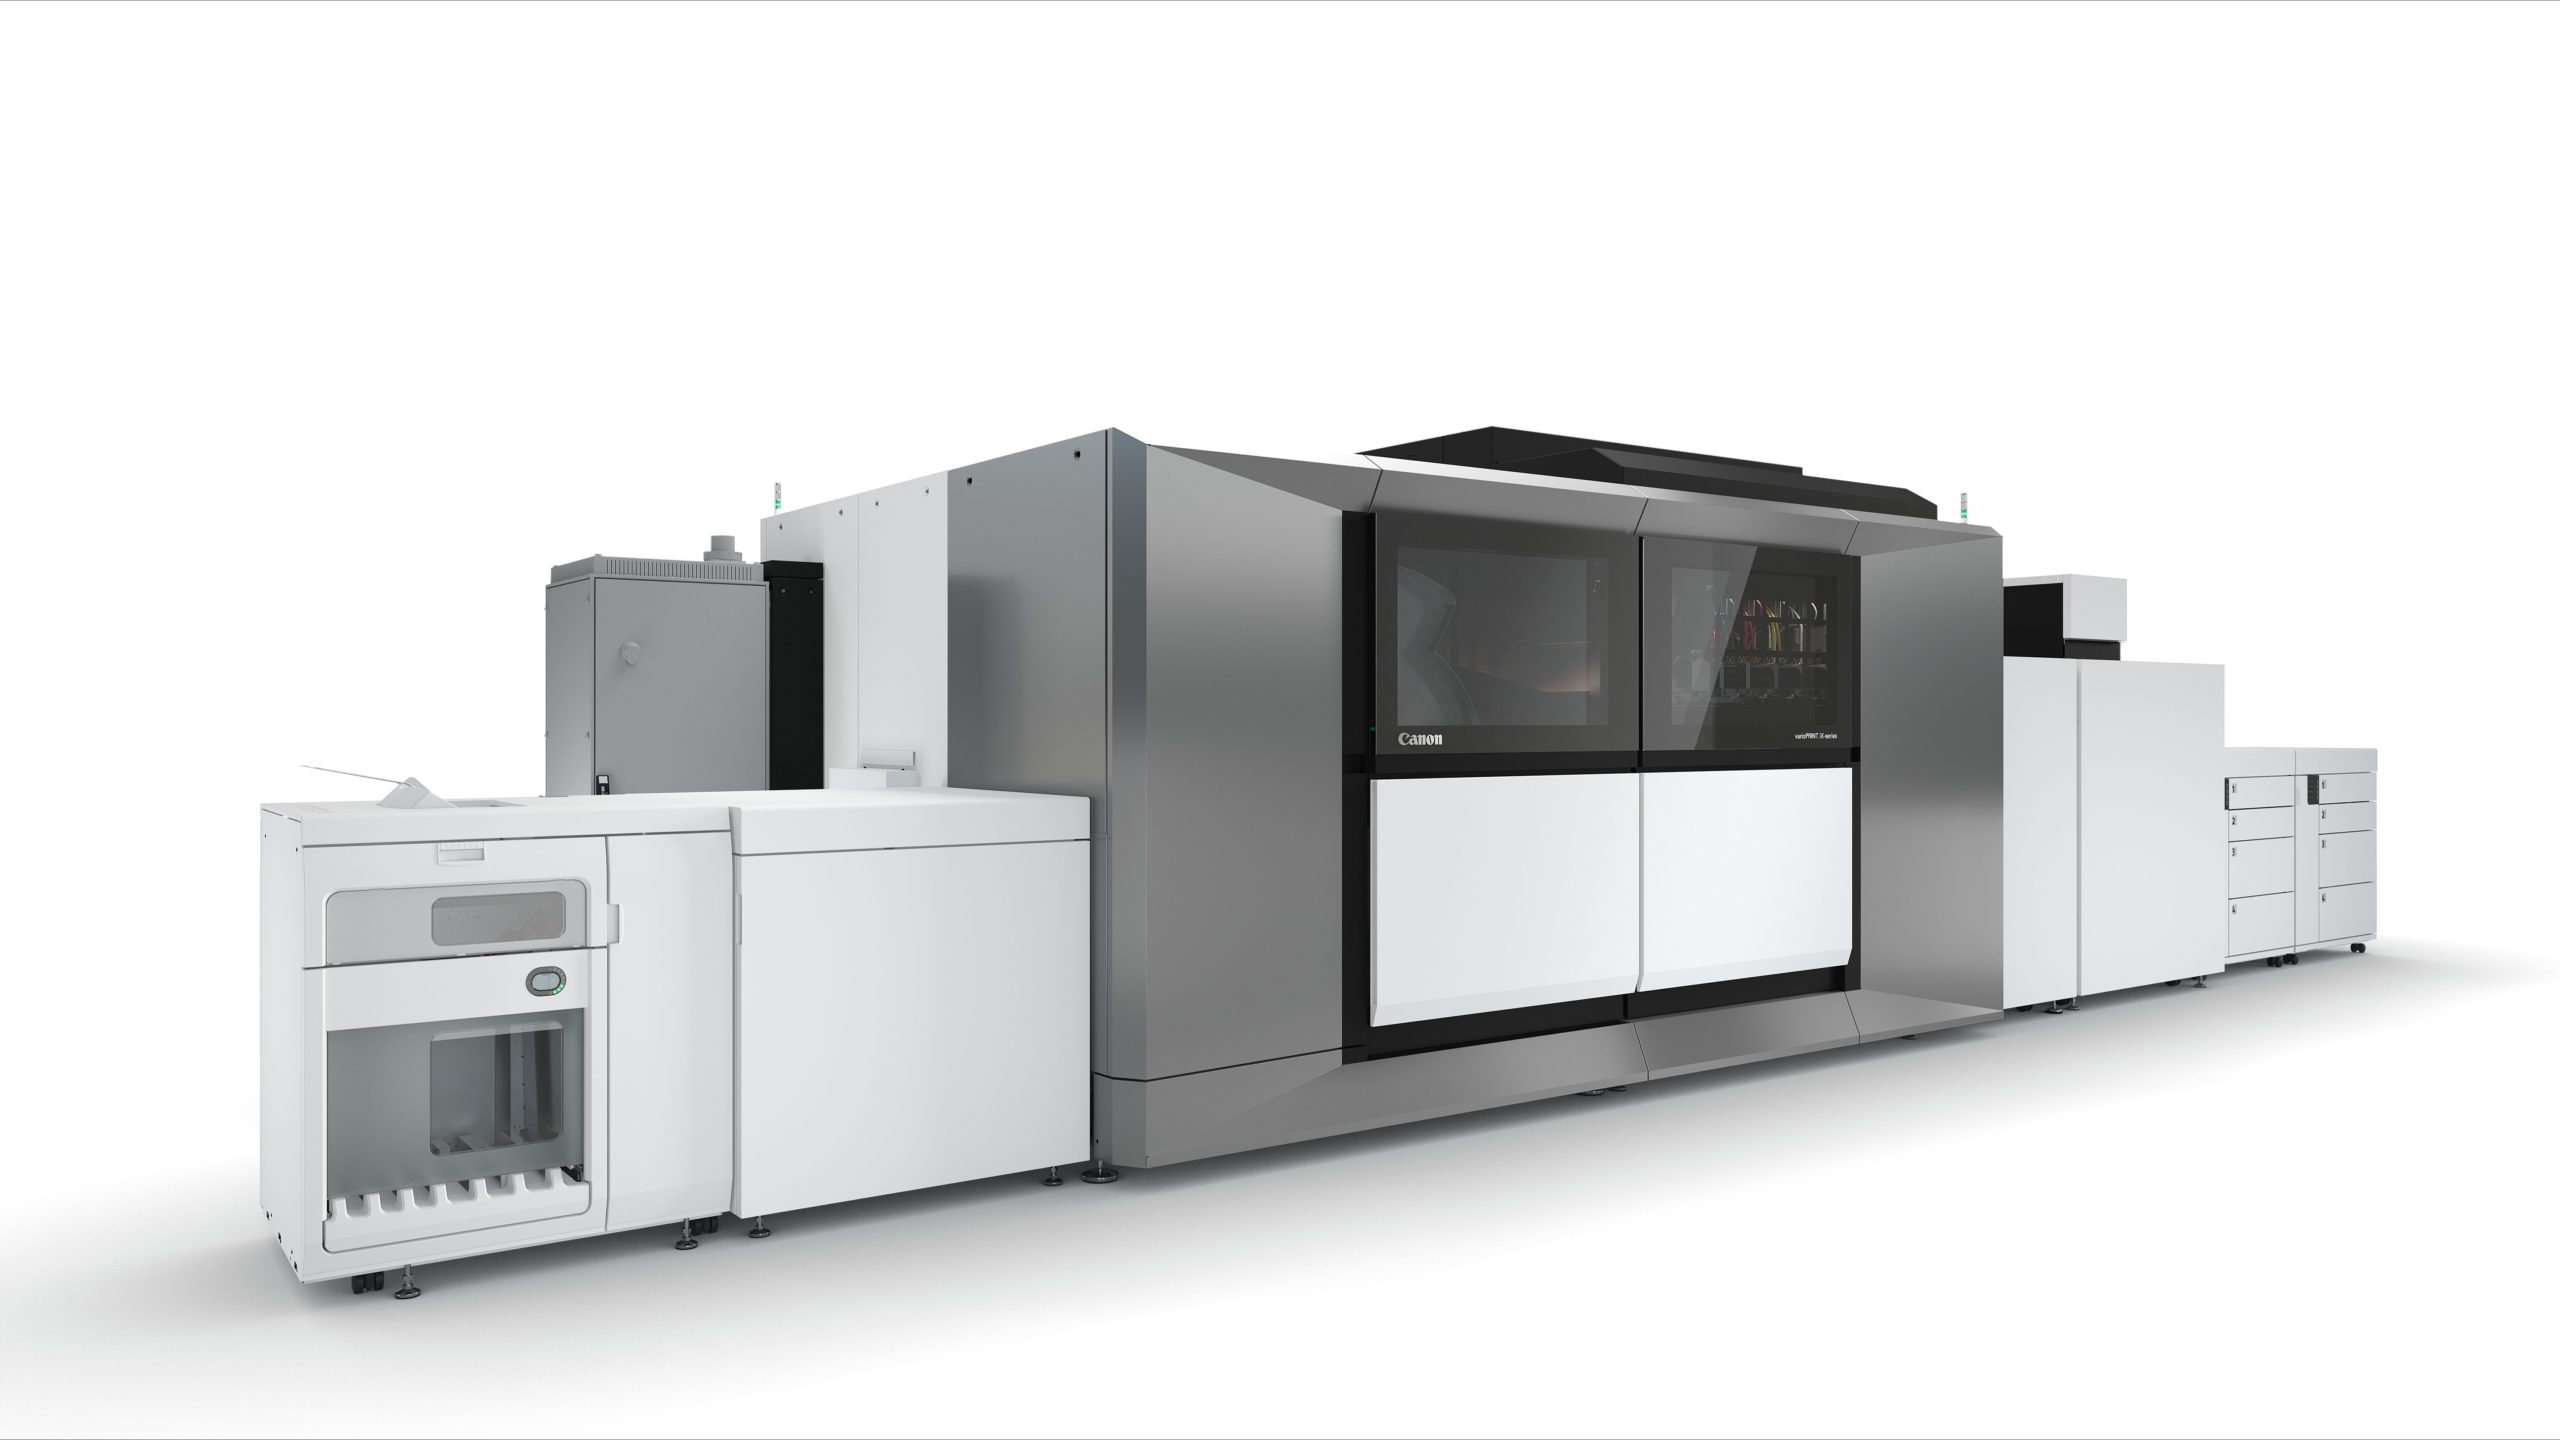 كانون تطلق سلسلة طابعات varioPRINT iX الجديدة للارتقاء بجودة الطباعة وتعزيز المرونة الرقمية وإنتاجية الطباعة النافثة للحبر